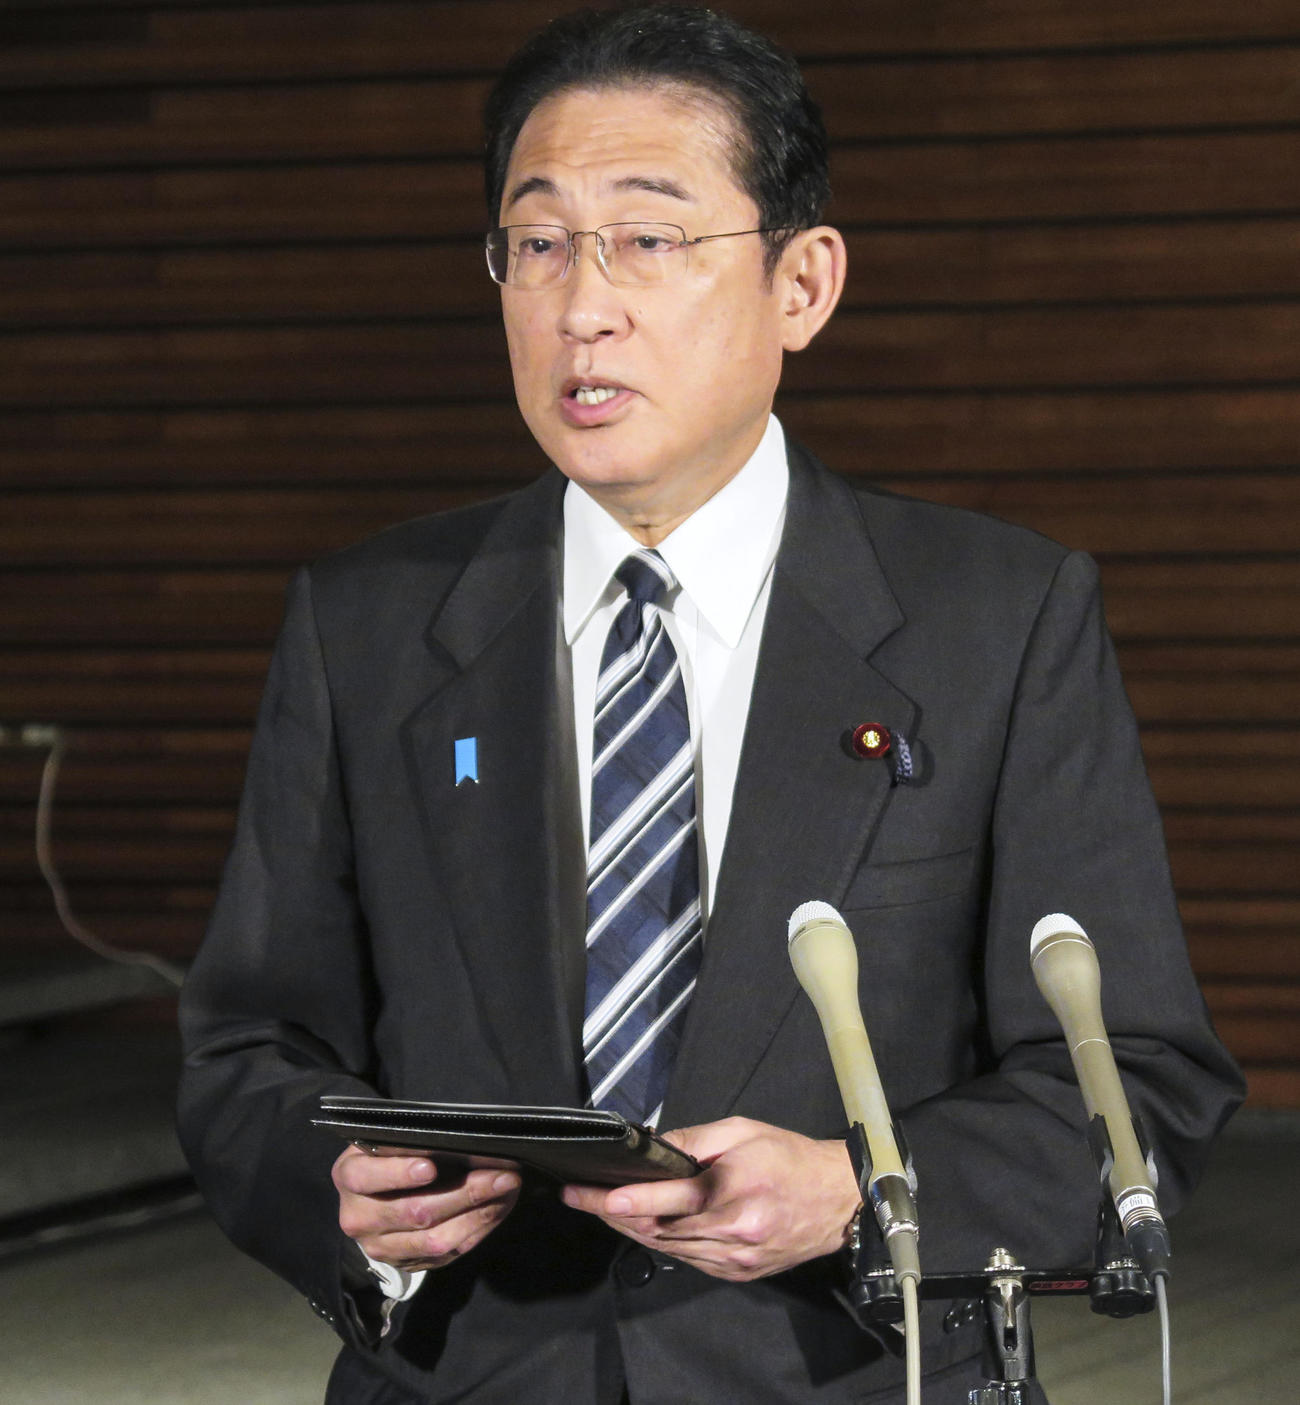 長男翔太郎秘書官の辞職表明を受け、取材に応じる岸田首相